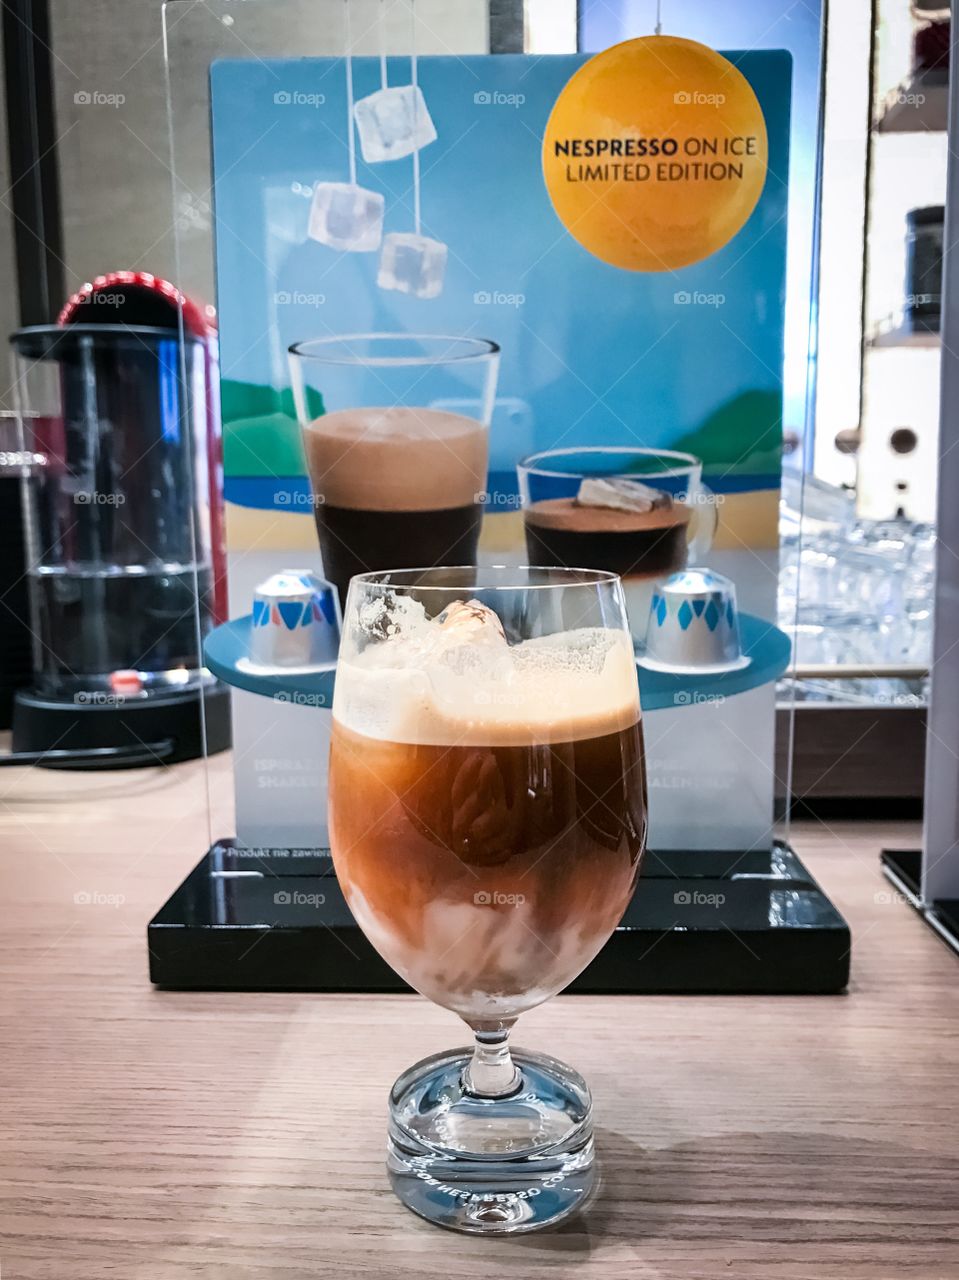 Ice coffee by Nespresso 